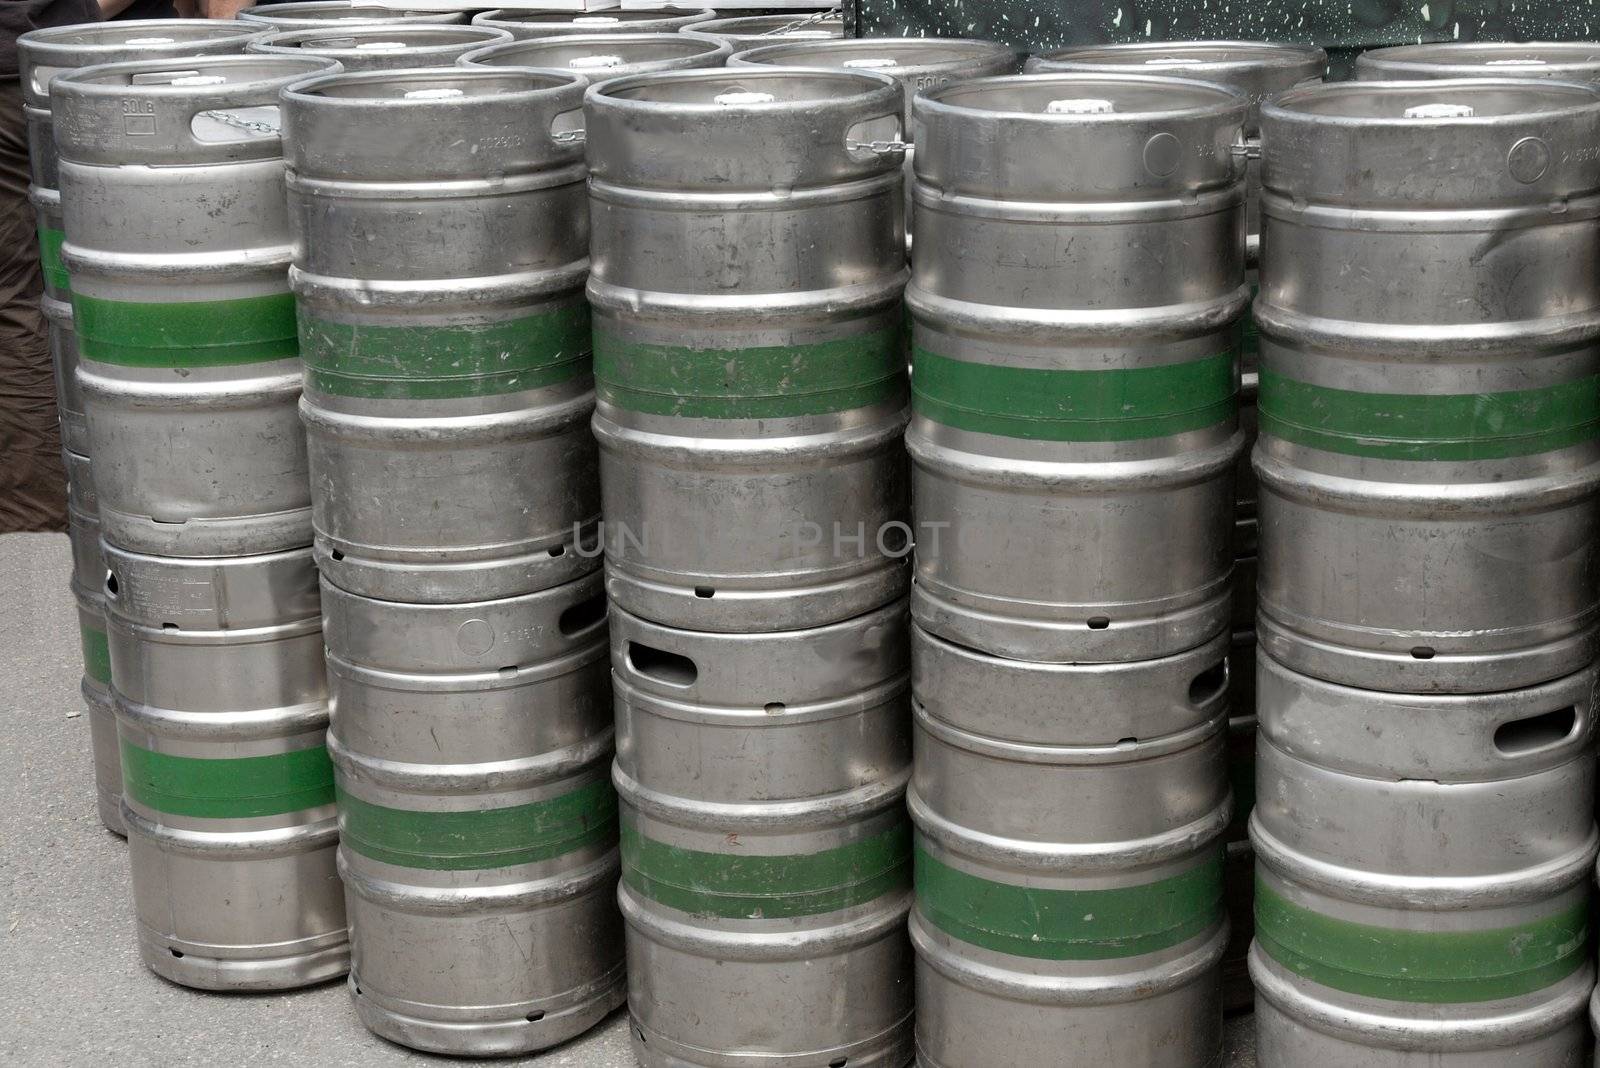 Metal barrels at a beer factory